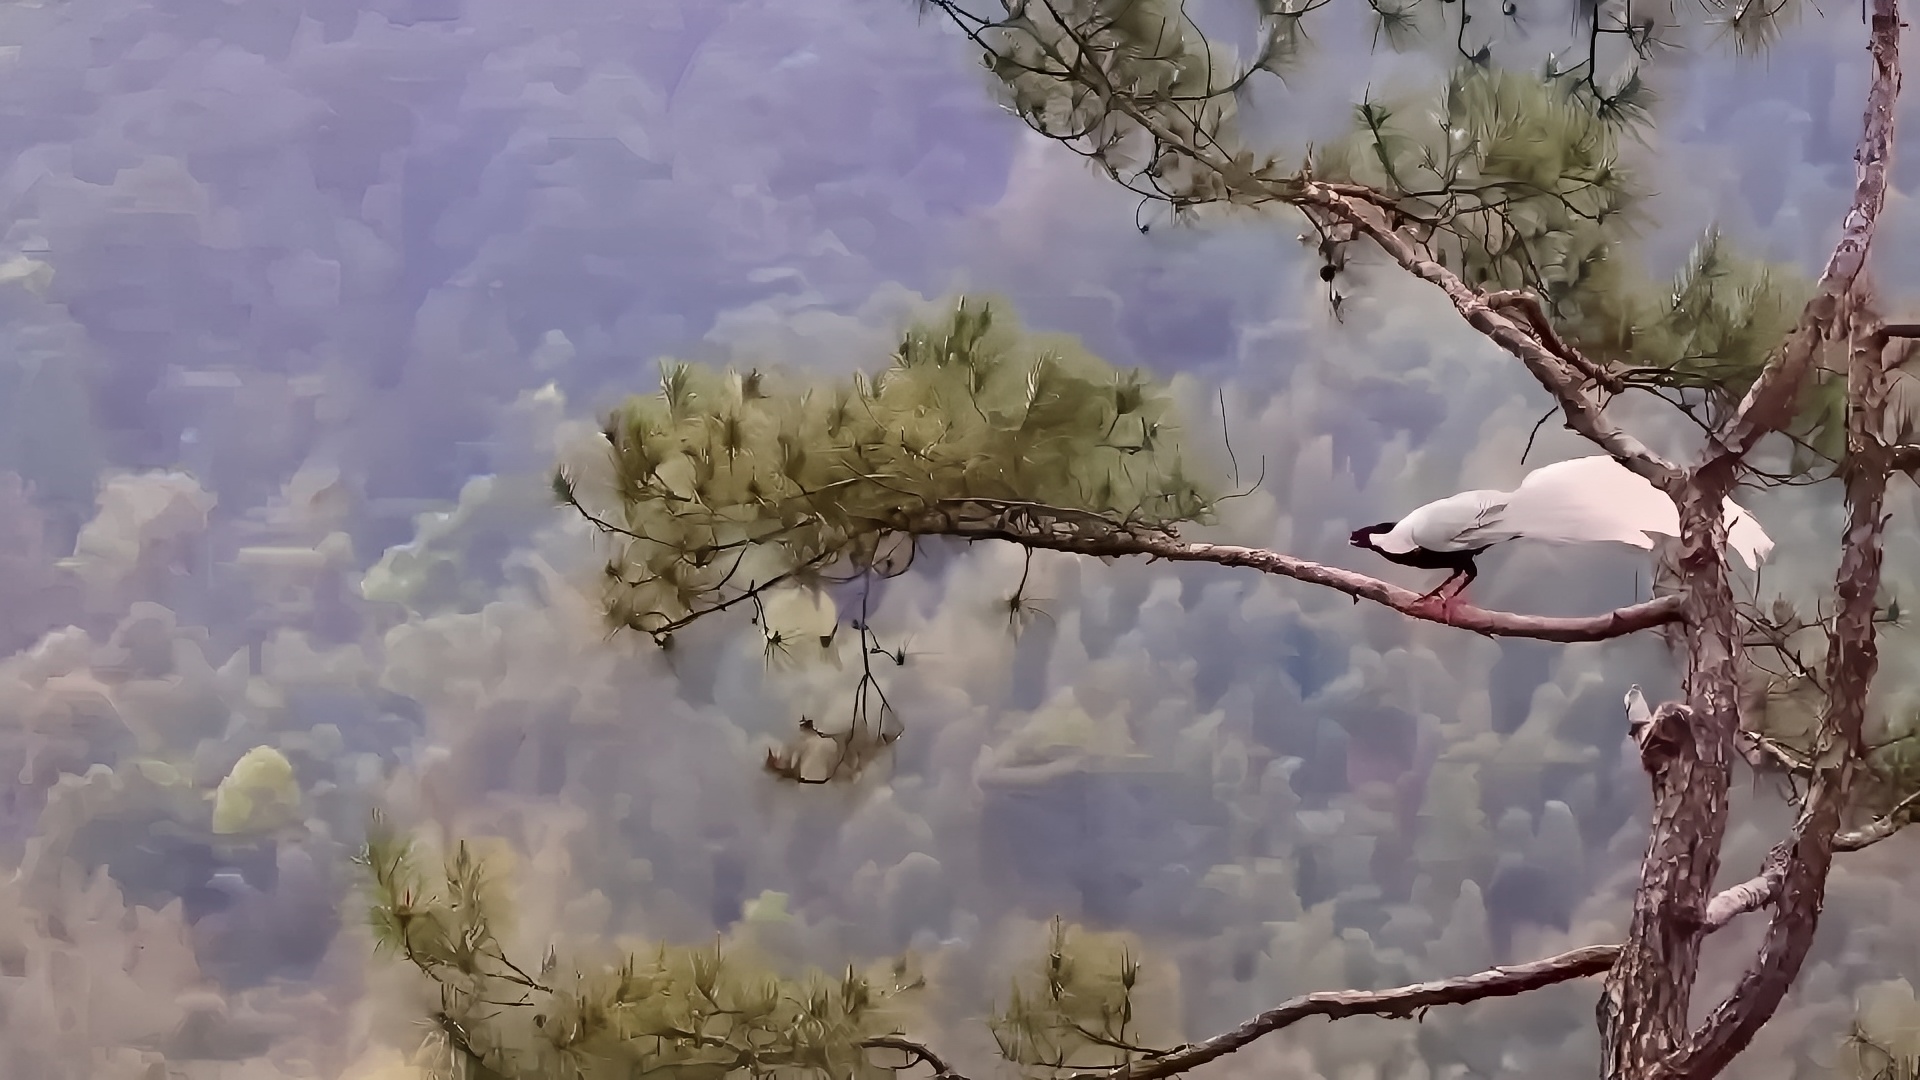 野生动物之美——飞翔的林中仙子白鹇，这么美丽动感会飞的鸟，不应该在仙境吗